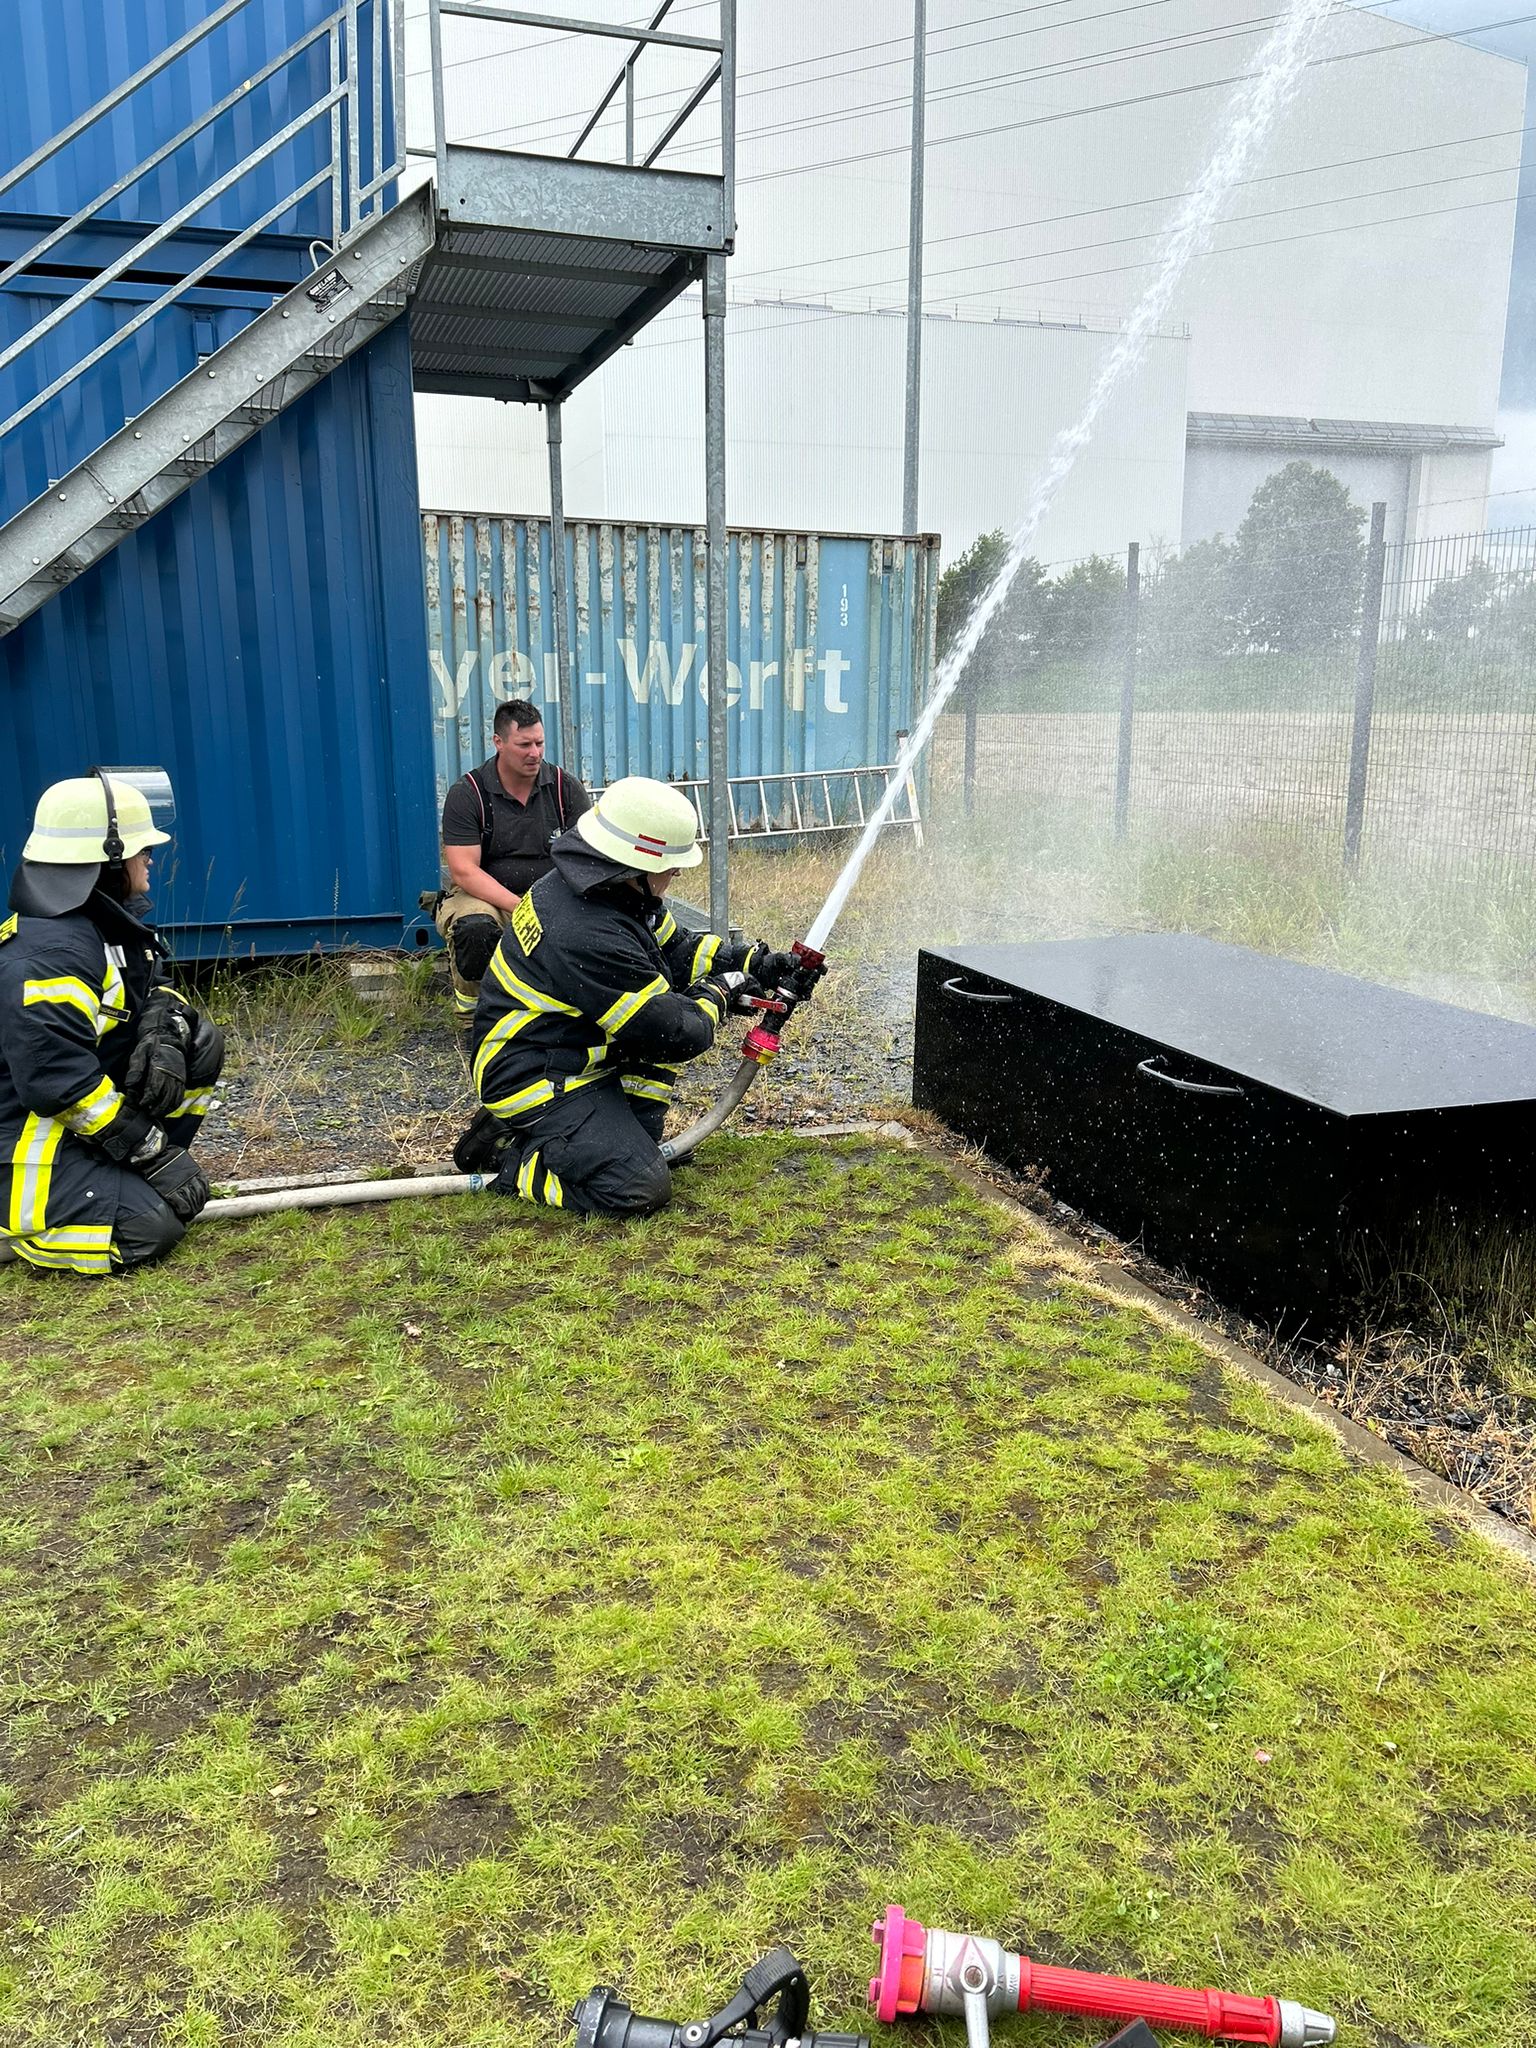 An verschiedenen Stationen wurde der Ernstfall geprobt. Foto: Netzwerk Feuerwehrfrauen